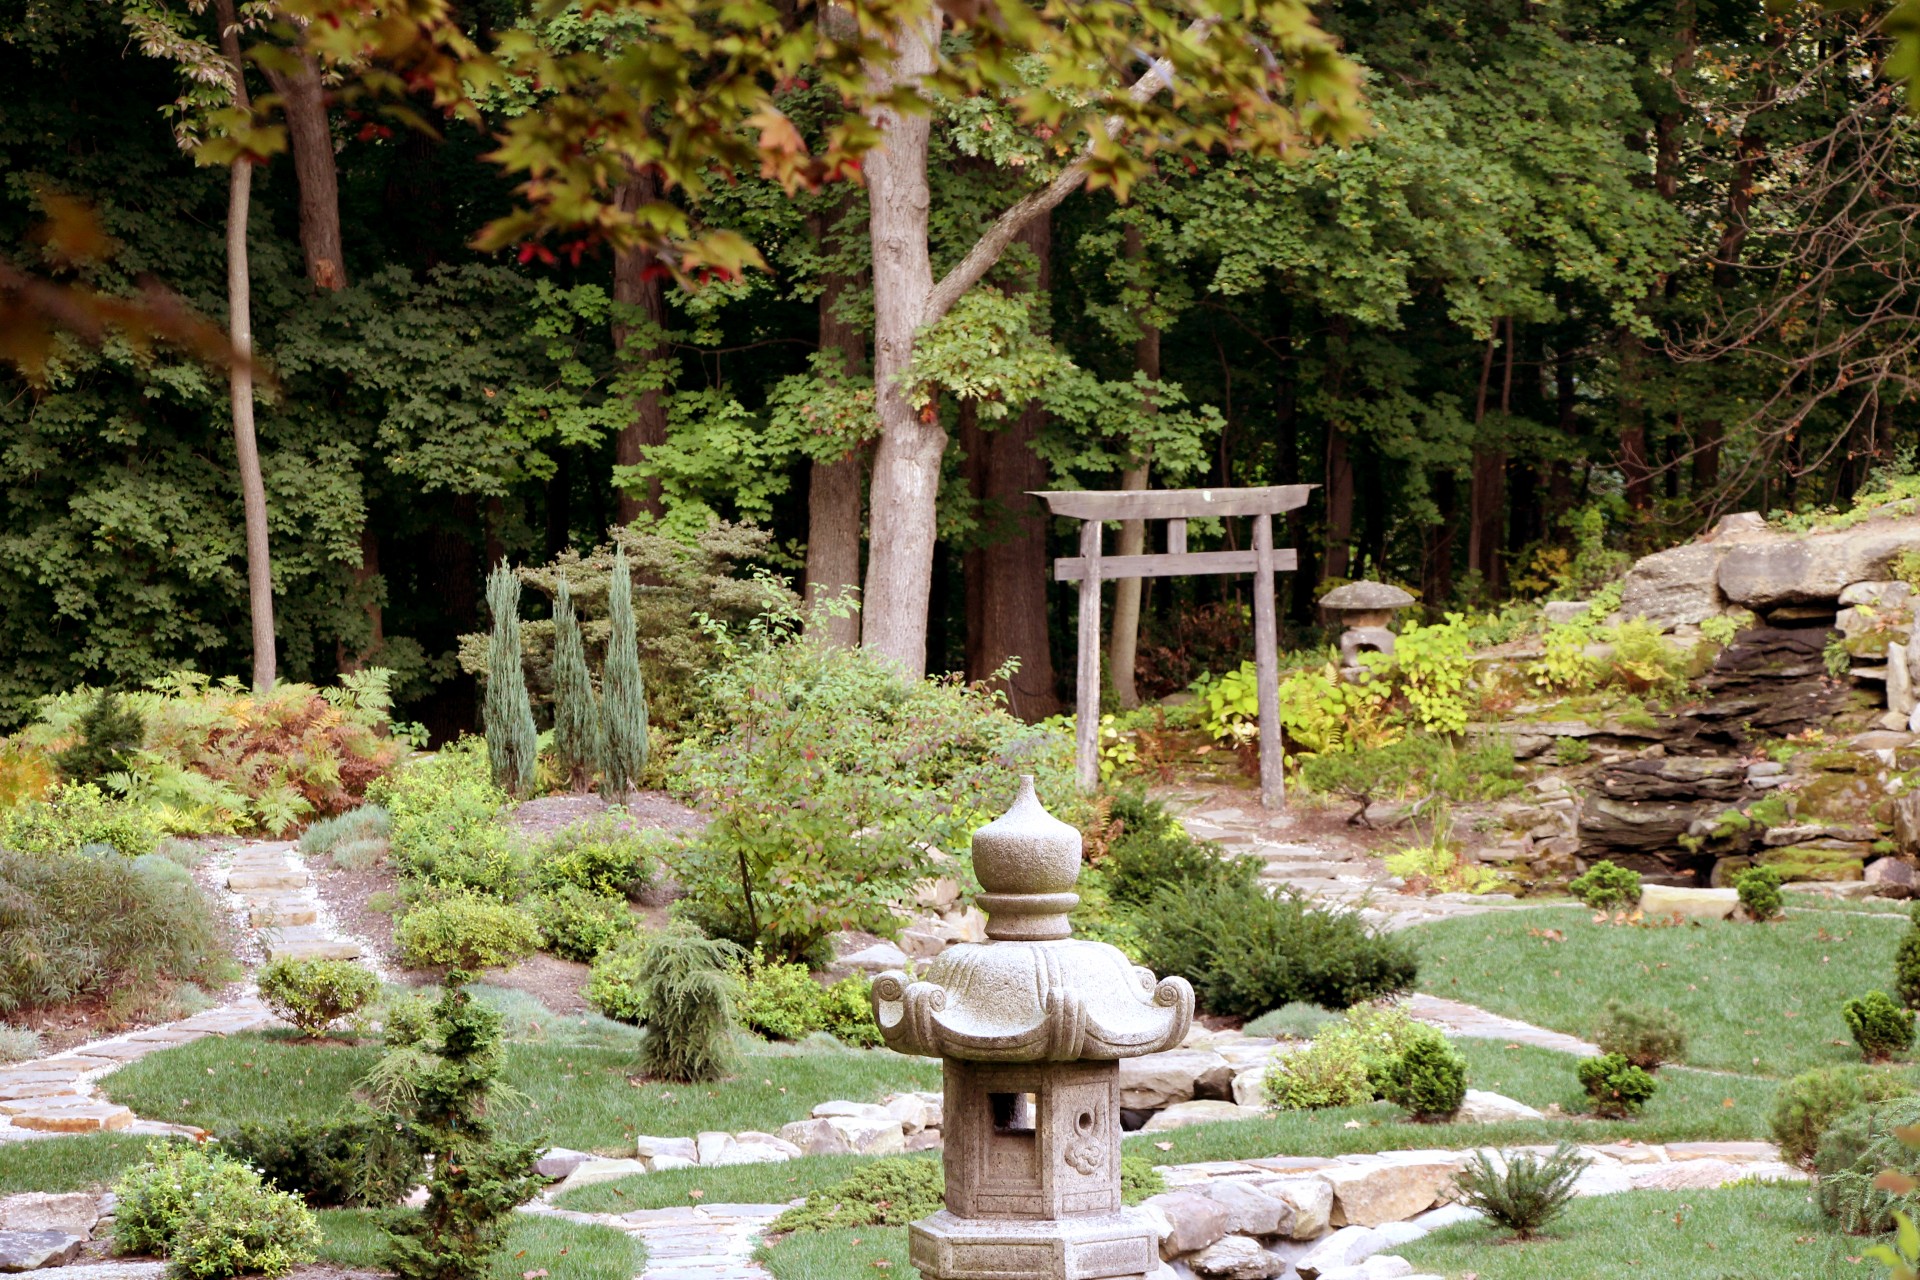 Japanese Garden, solitude